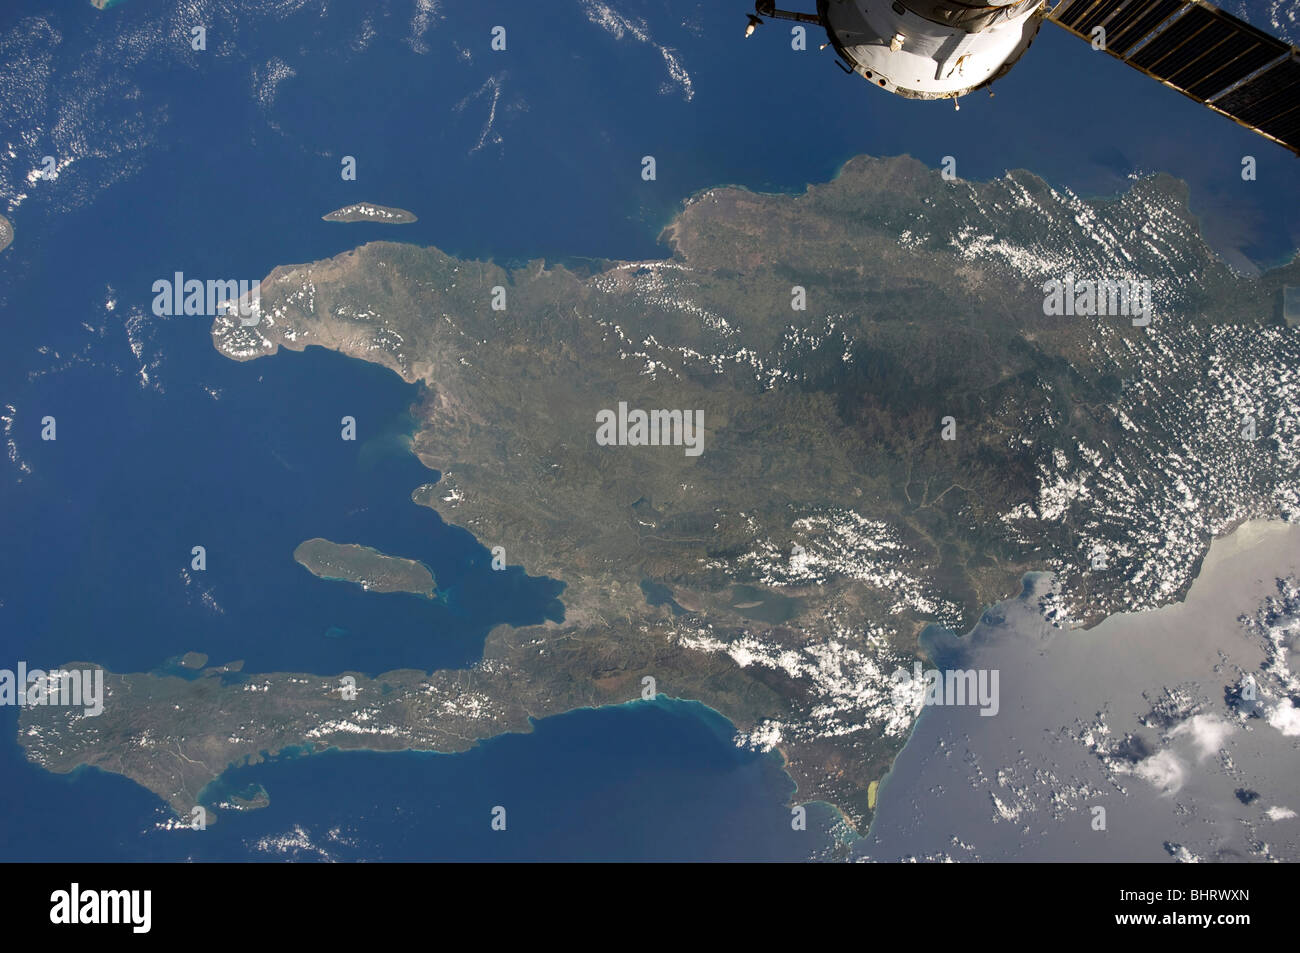 Ein Blick auf der karibischen Insel Hispaniola aus der internationalen Raumstation ISS. Stockfoto